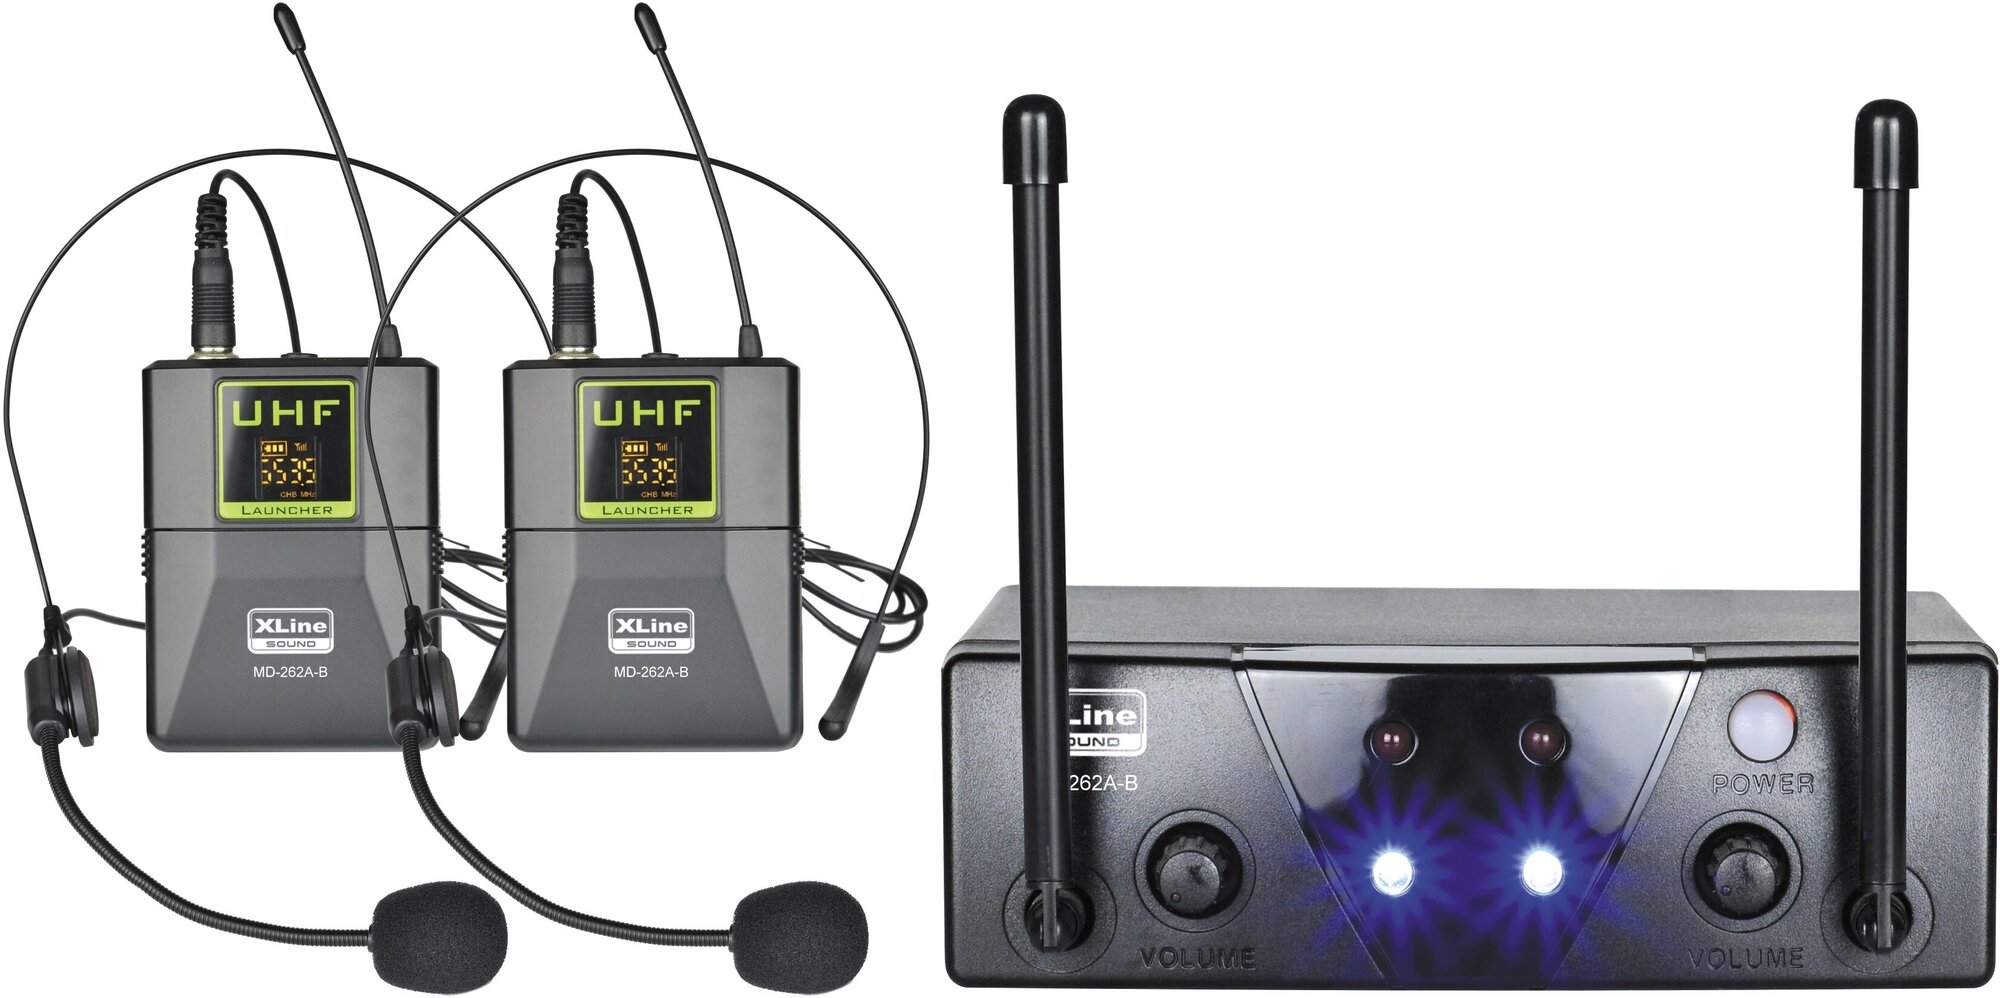 Радиосистема двухканальная c двумя поясными передатчиками, фикс. частота Xline MD-262A-B